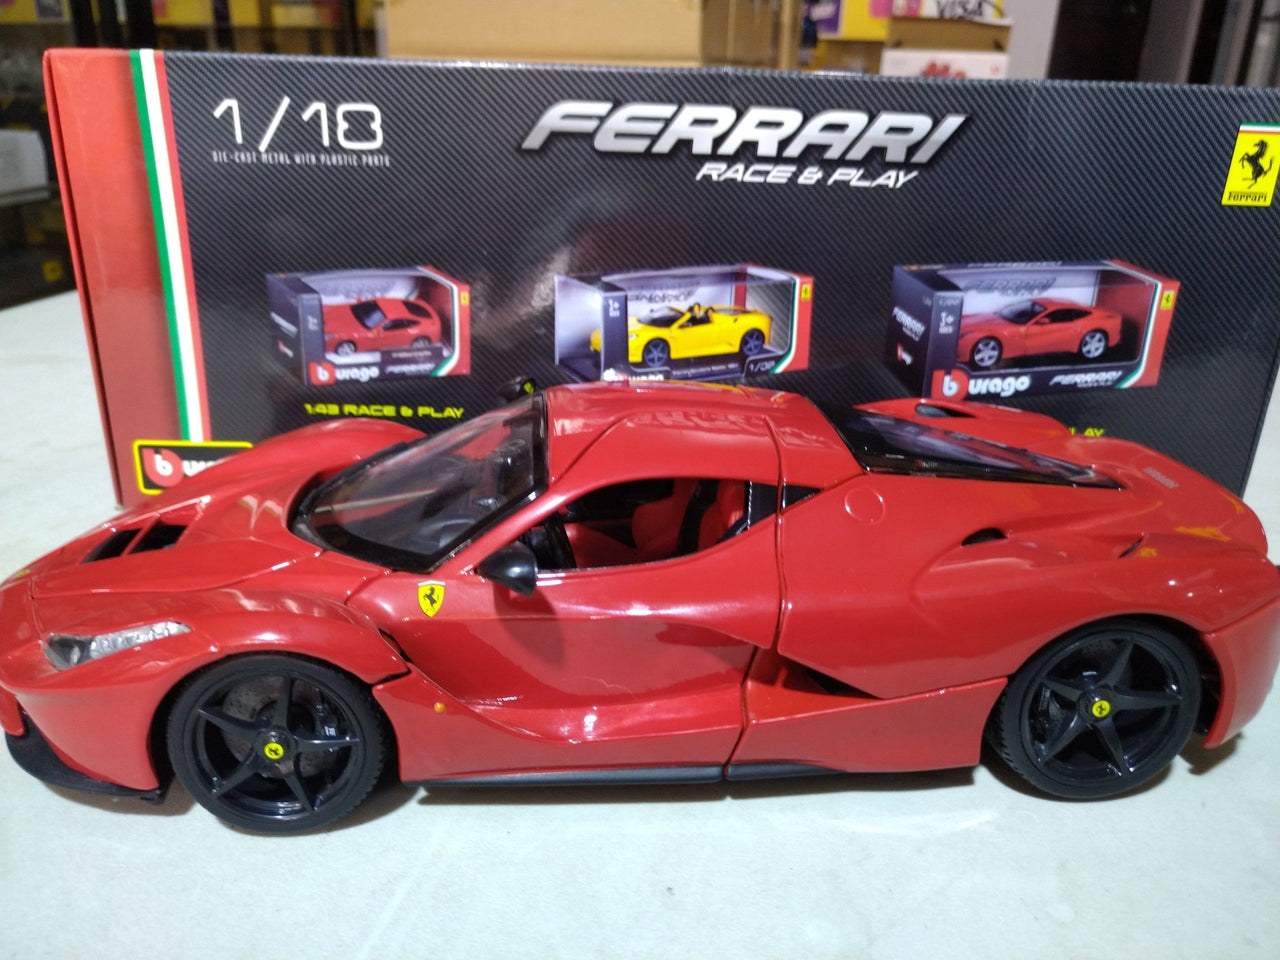 18-16001 Ferrari Race & Play Escala 1:18 - CAT SERVICE PERU S.A.C.